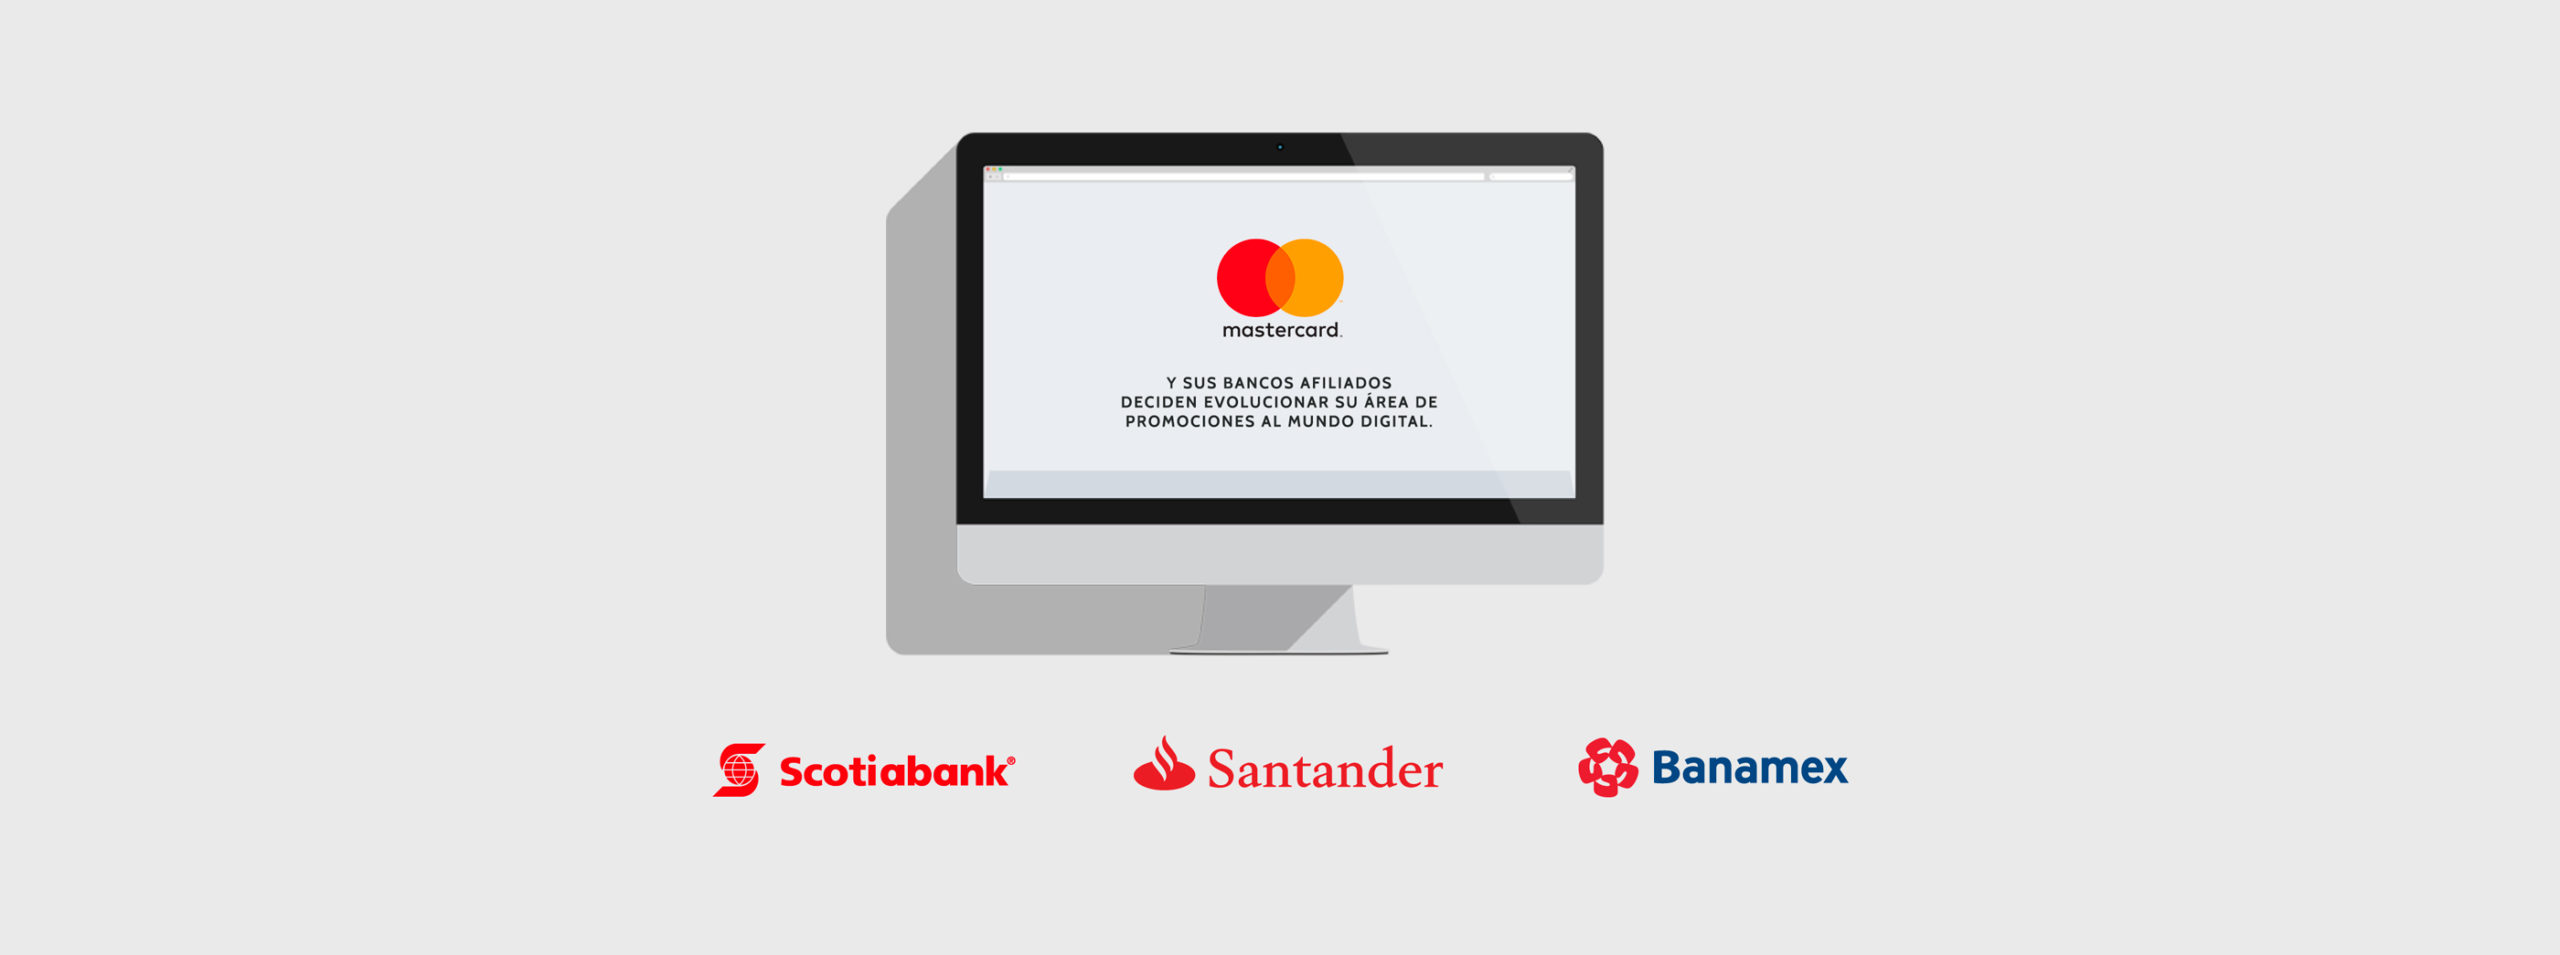 Bancos aliados Promo Digital Mastercard